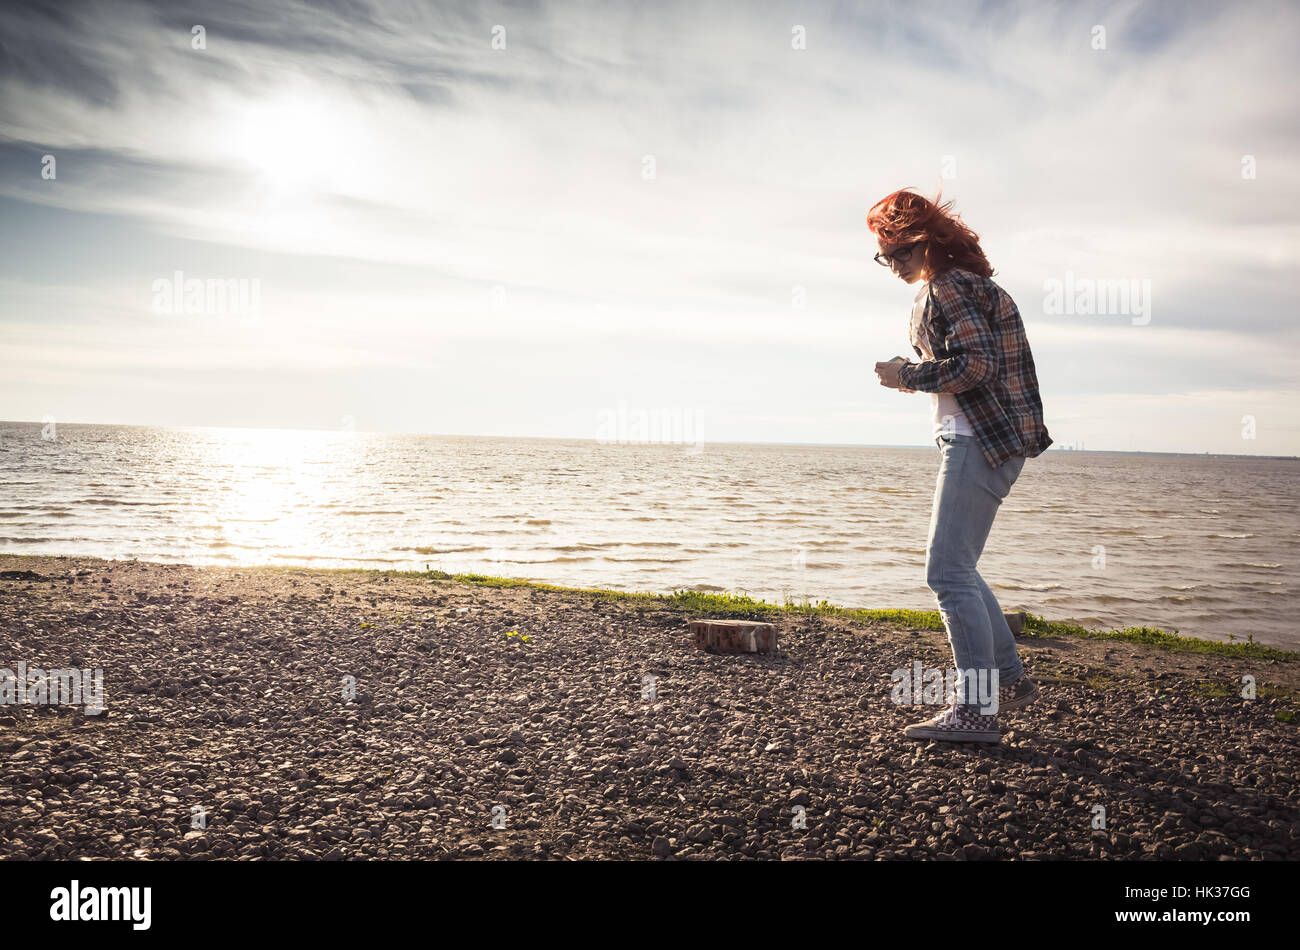 Fille qui marche sur un littoral, vintage photo correction tonale effet du filtre, vieux style instagram Banque D'Images